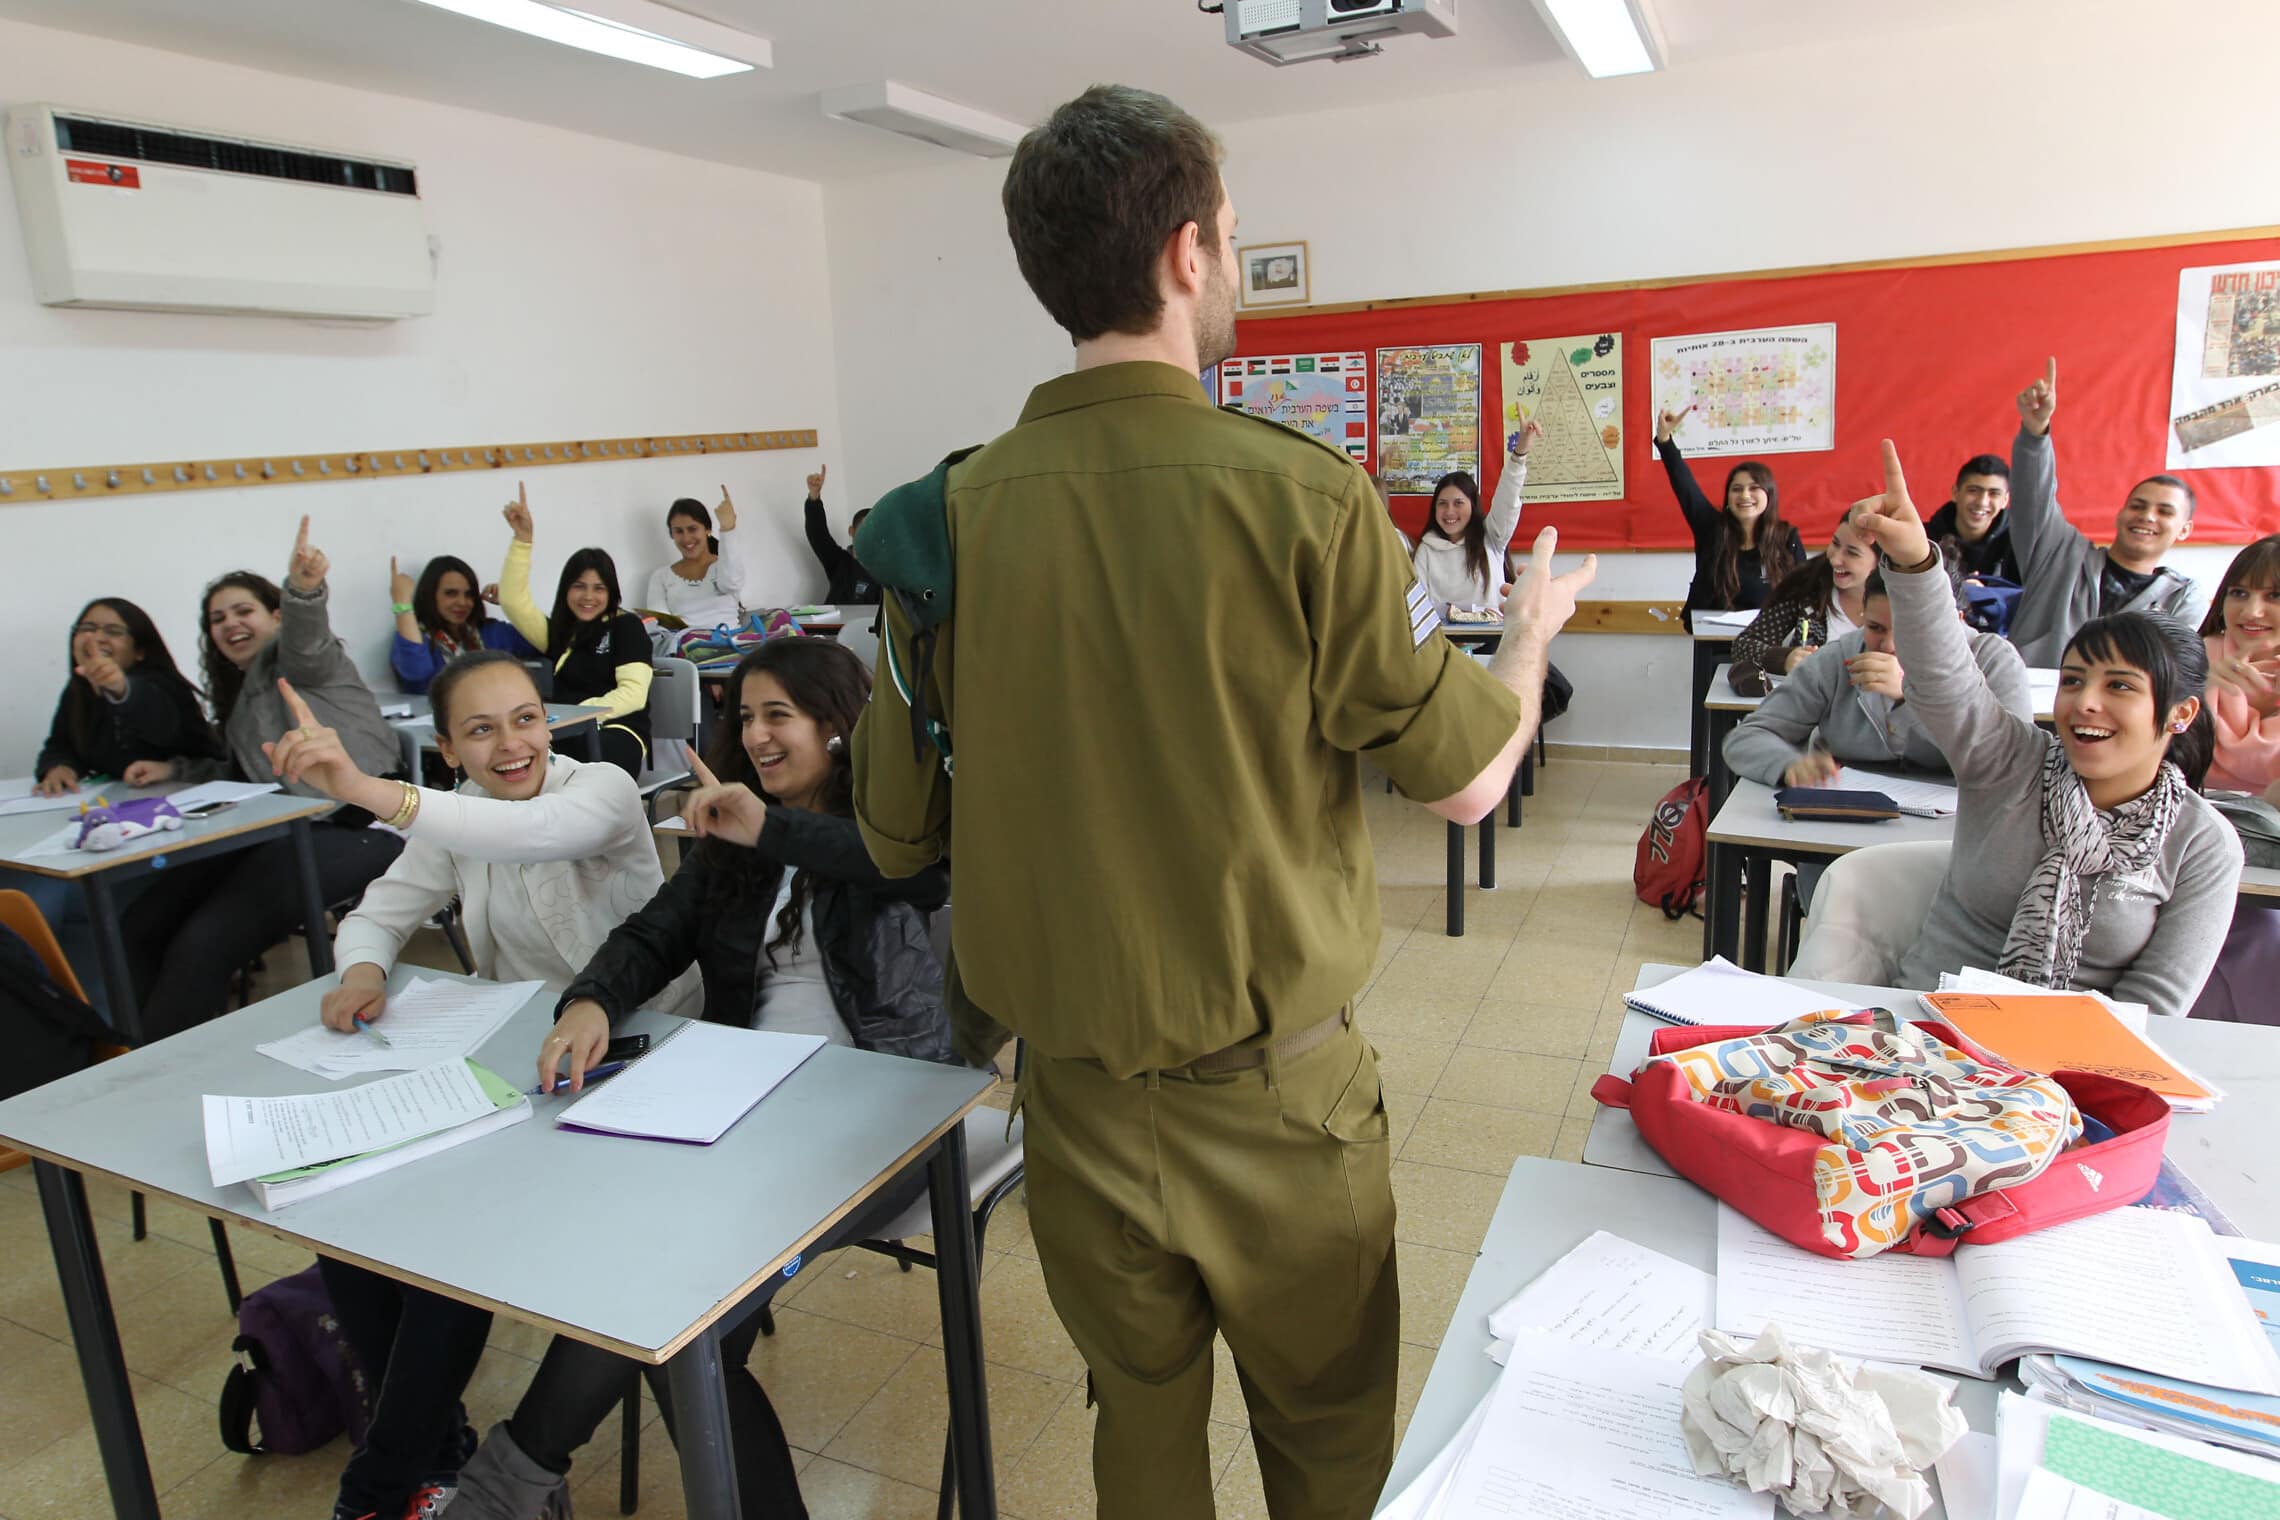 חייל מיחידת 8200 מבקר בכיתה בתיכון בבית שמש (צילום: נתי שוחט/פלאש90)